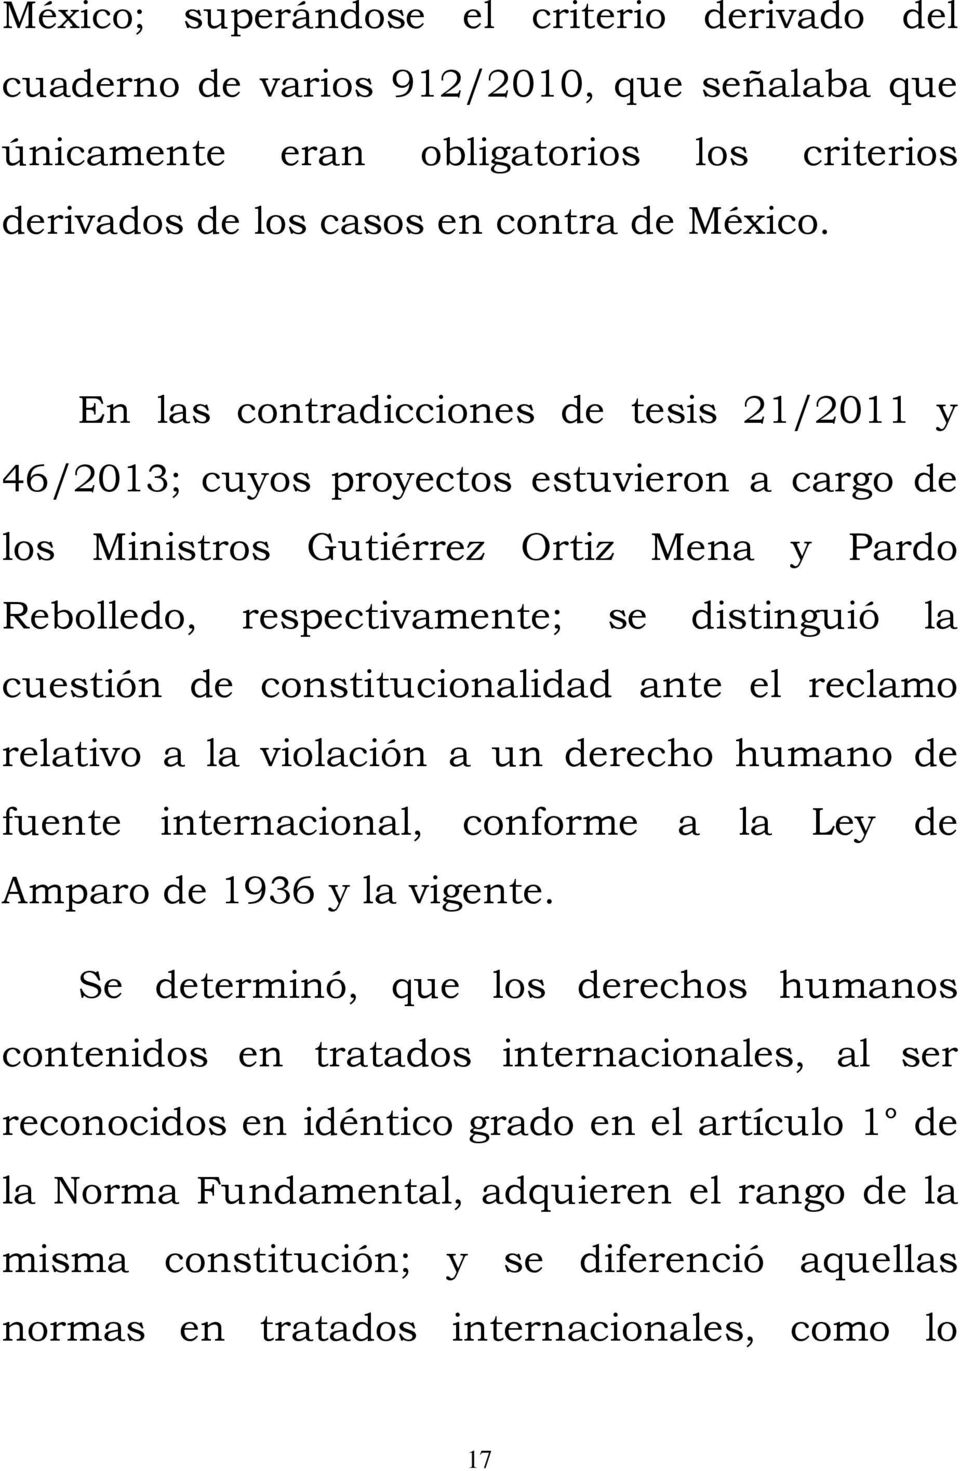 constitucionalidad ante el reclamo relativo a la violación a un derecho humano de fuente internacional, conforme a la Ley de Amparo de 1936 y la vigente.